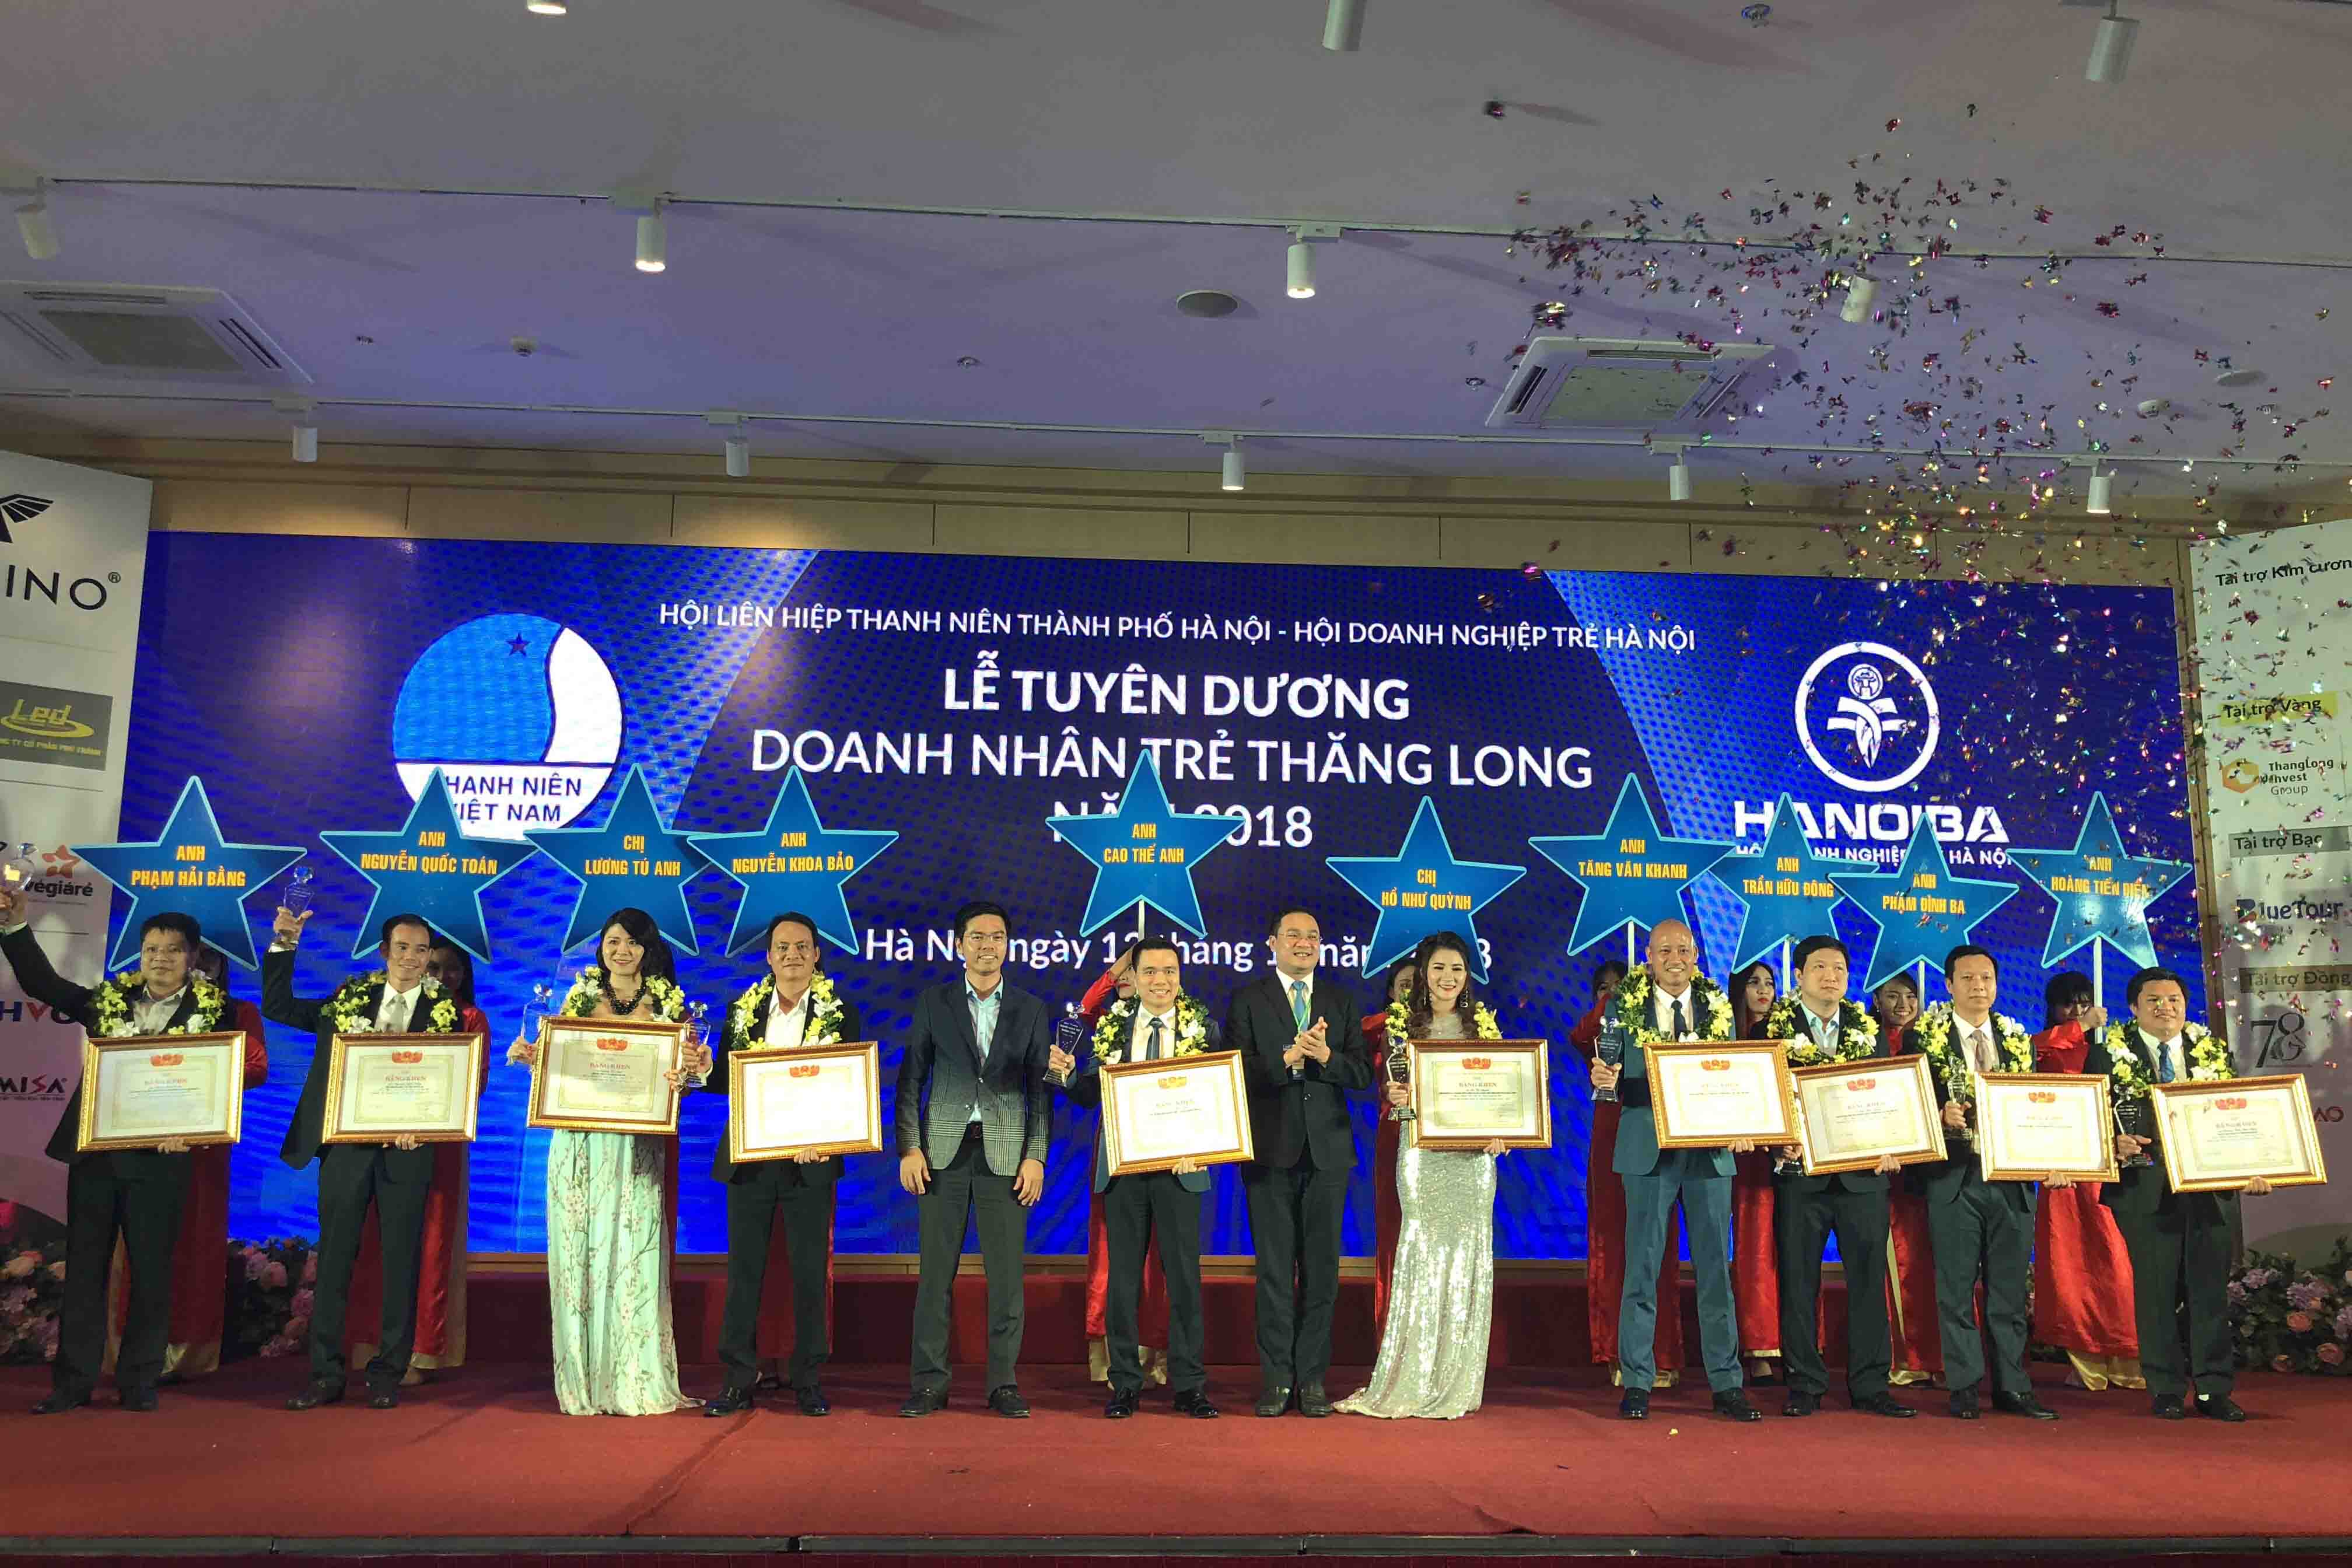 Top 10 doanh nhân được trao giải thưởng Doanh nhân trẻ Thăng Long 2018.